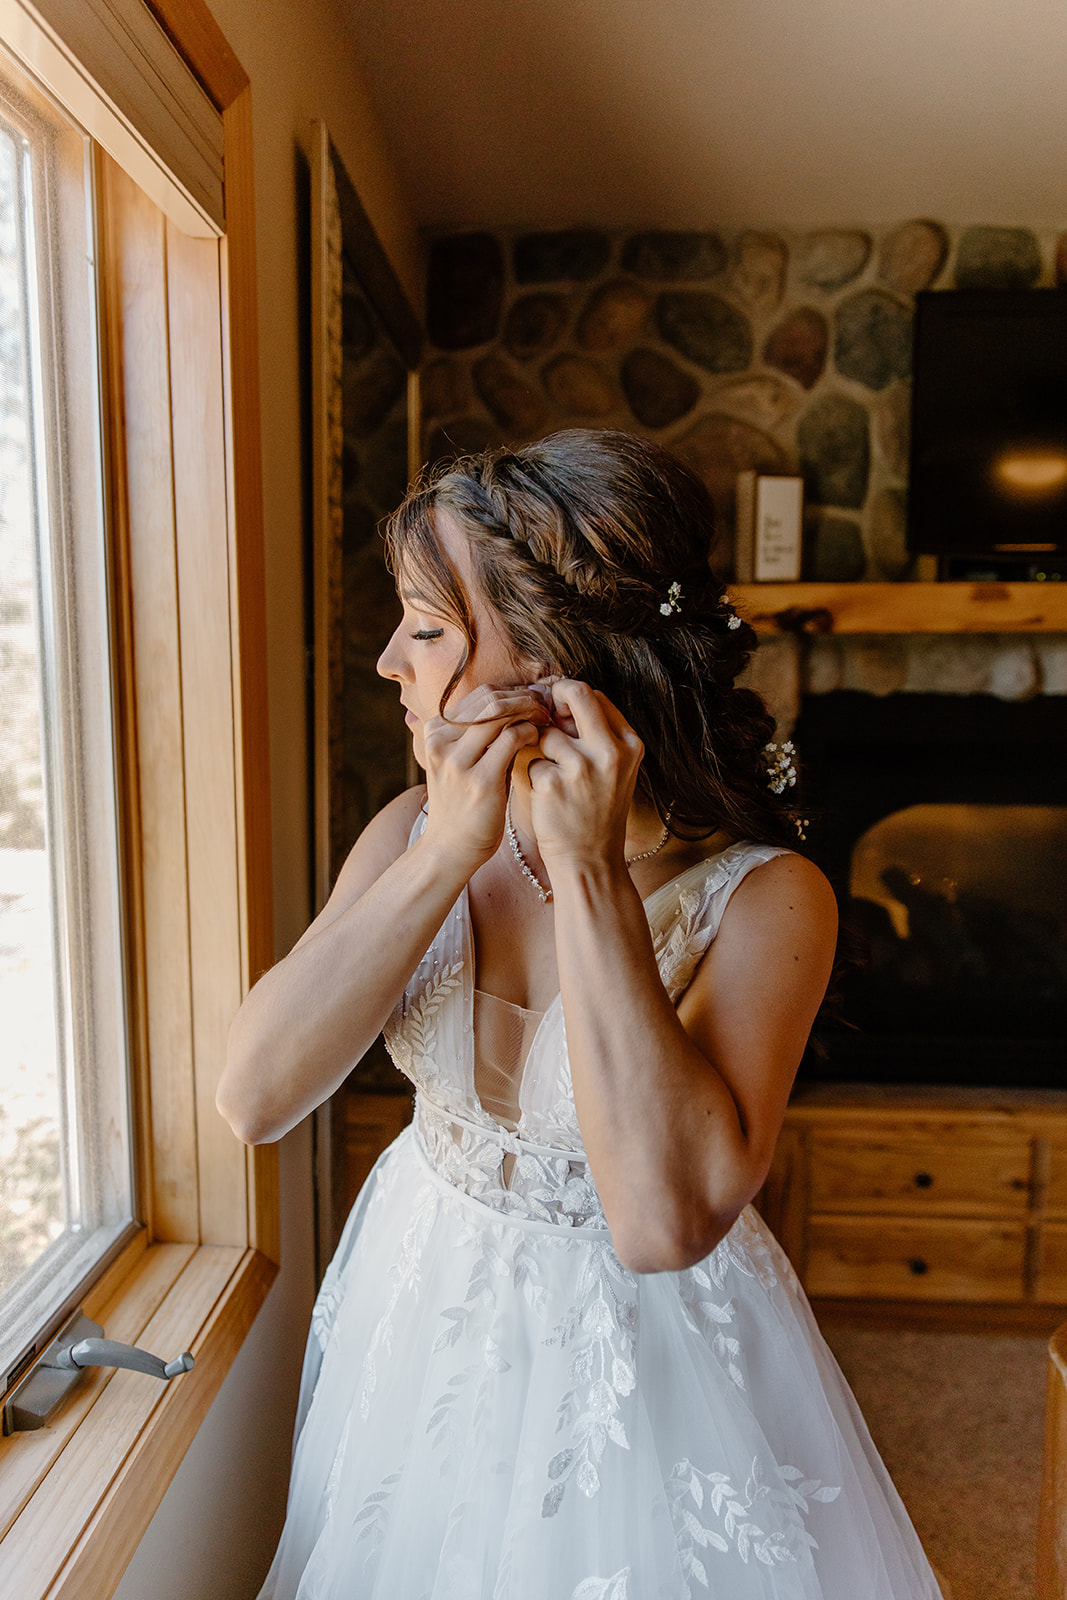 Bride puts in earrings in front of a window